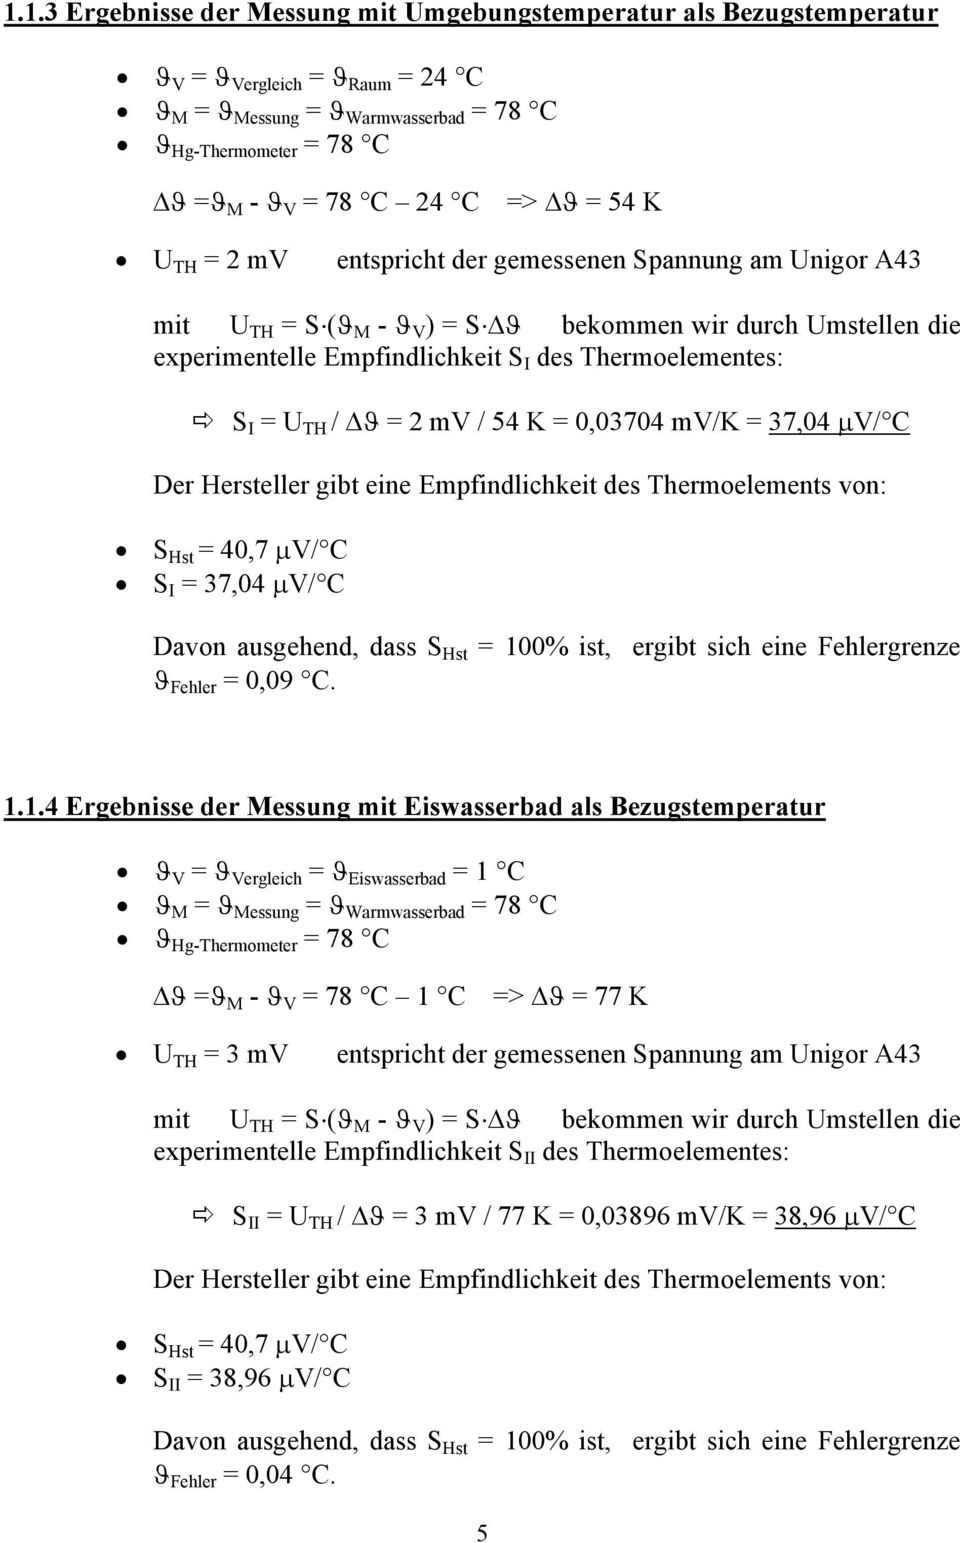 U TH / ϑ = 2 mv / 54 K = 0,03704 mv/k = 37,04 µv/ C Der Hersteller gibt eine Empfindlichkeit des Thermoelements von: S Hst = 40,7 µv/ C S I = 37,04 µv/ C Davon ausgehend, dass S Hst = 100% ist,